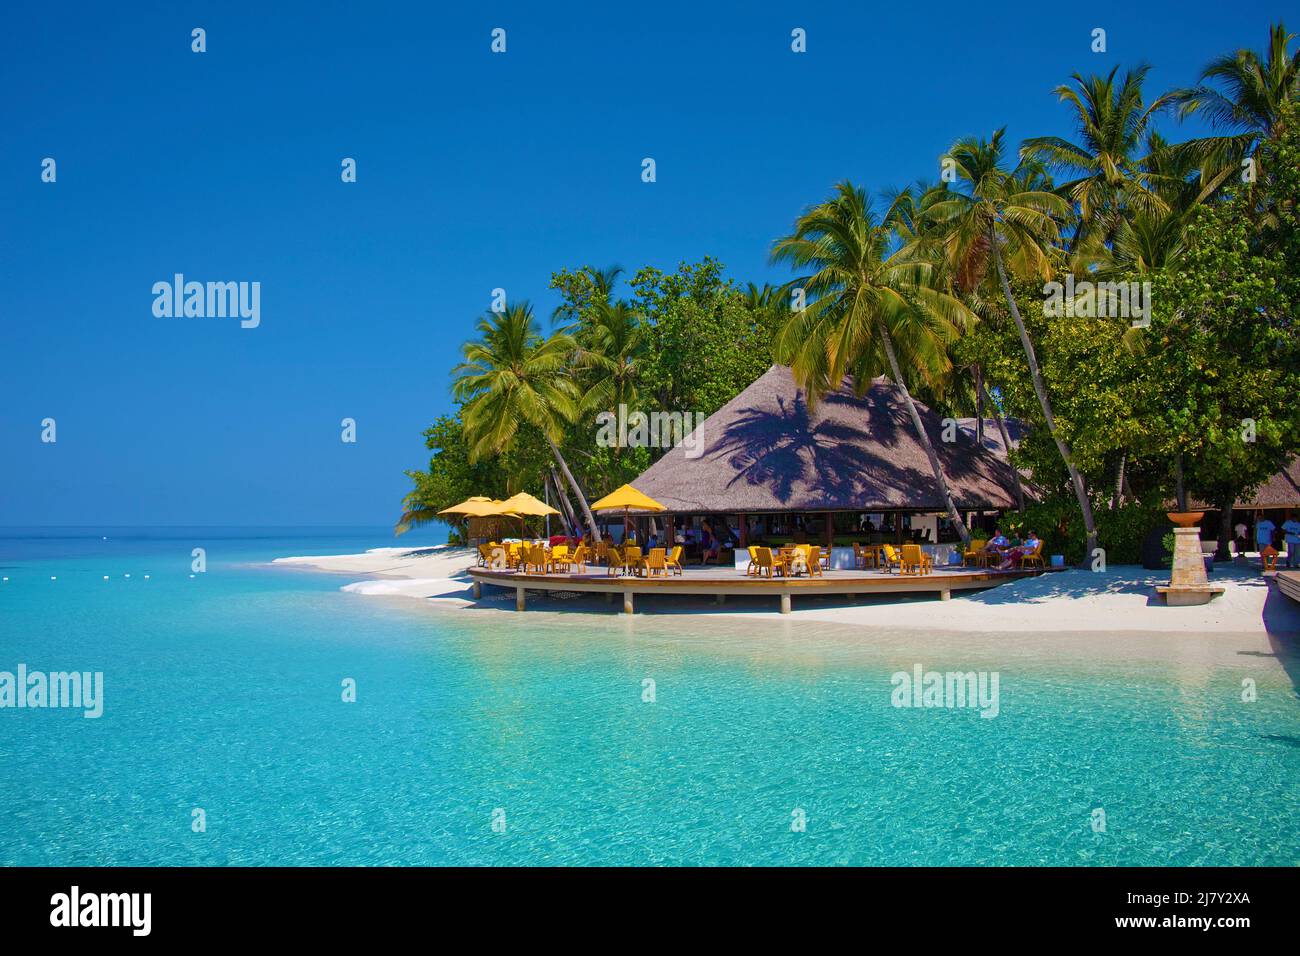 Bar de playa en un centro turístico de maldivas, isla con palmeras, playa y laguna, Maldivas, océano Índico, Asia Foto de stock